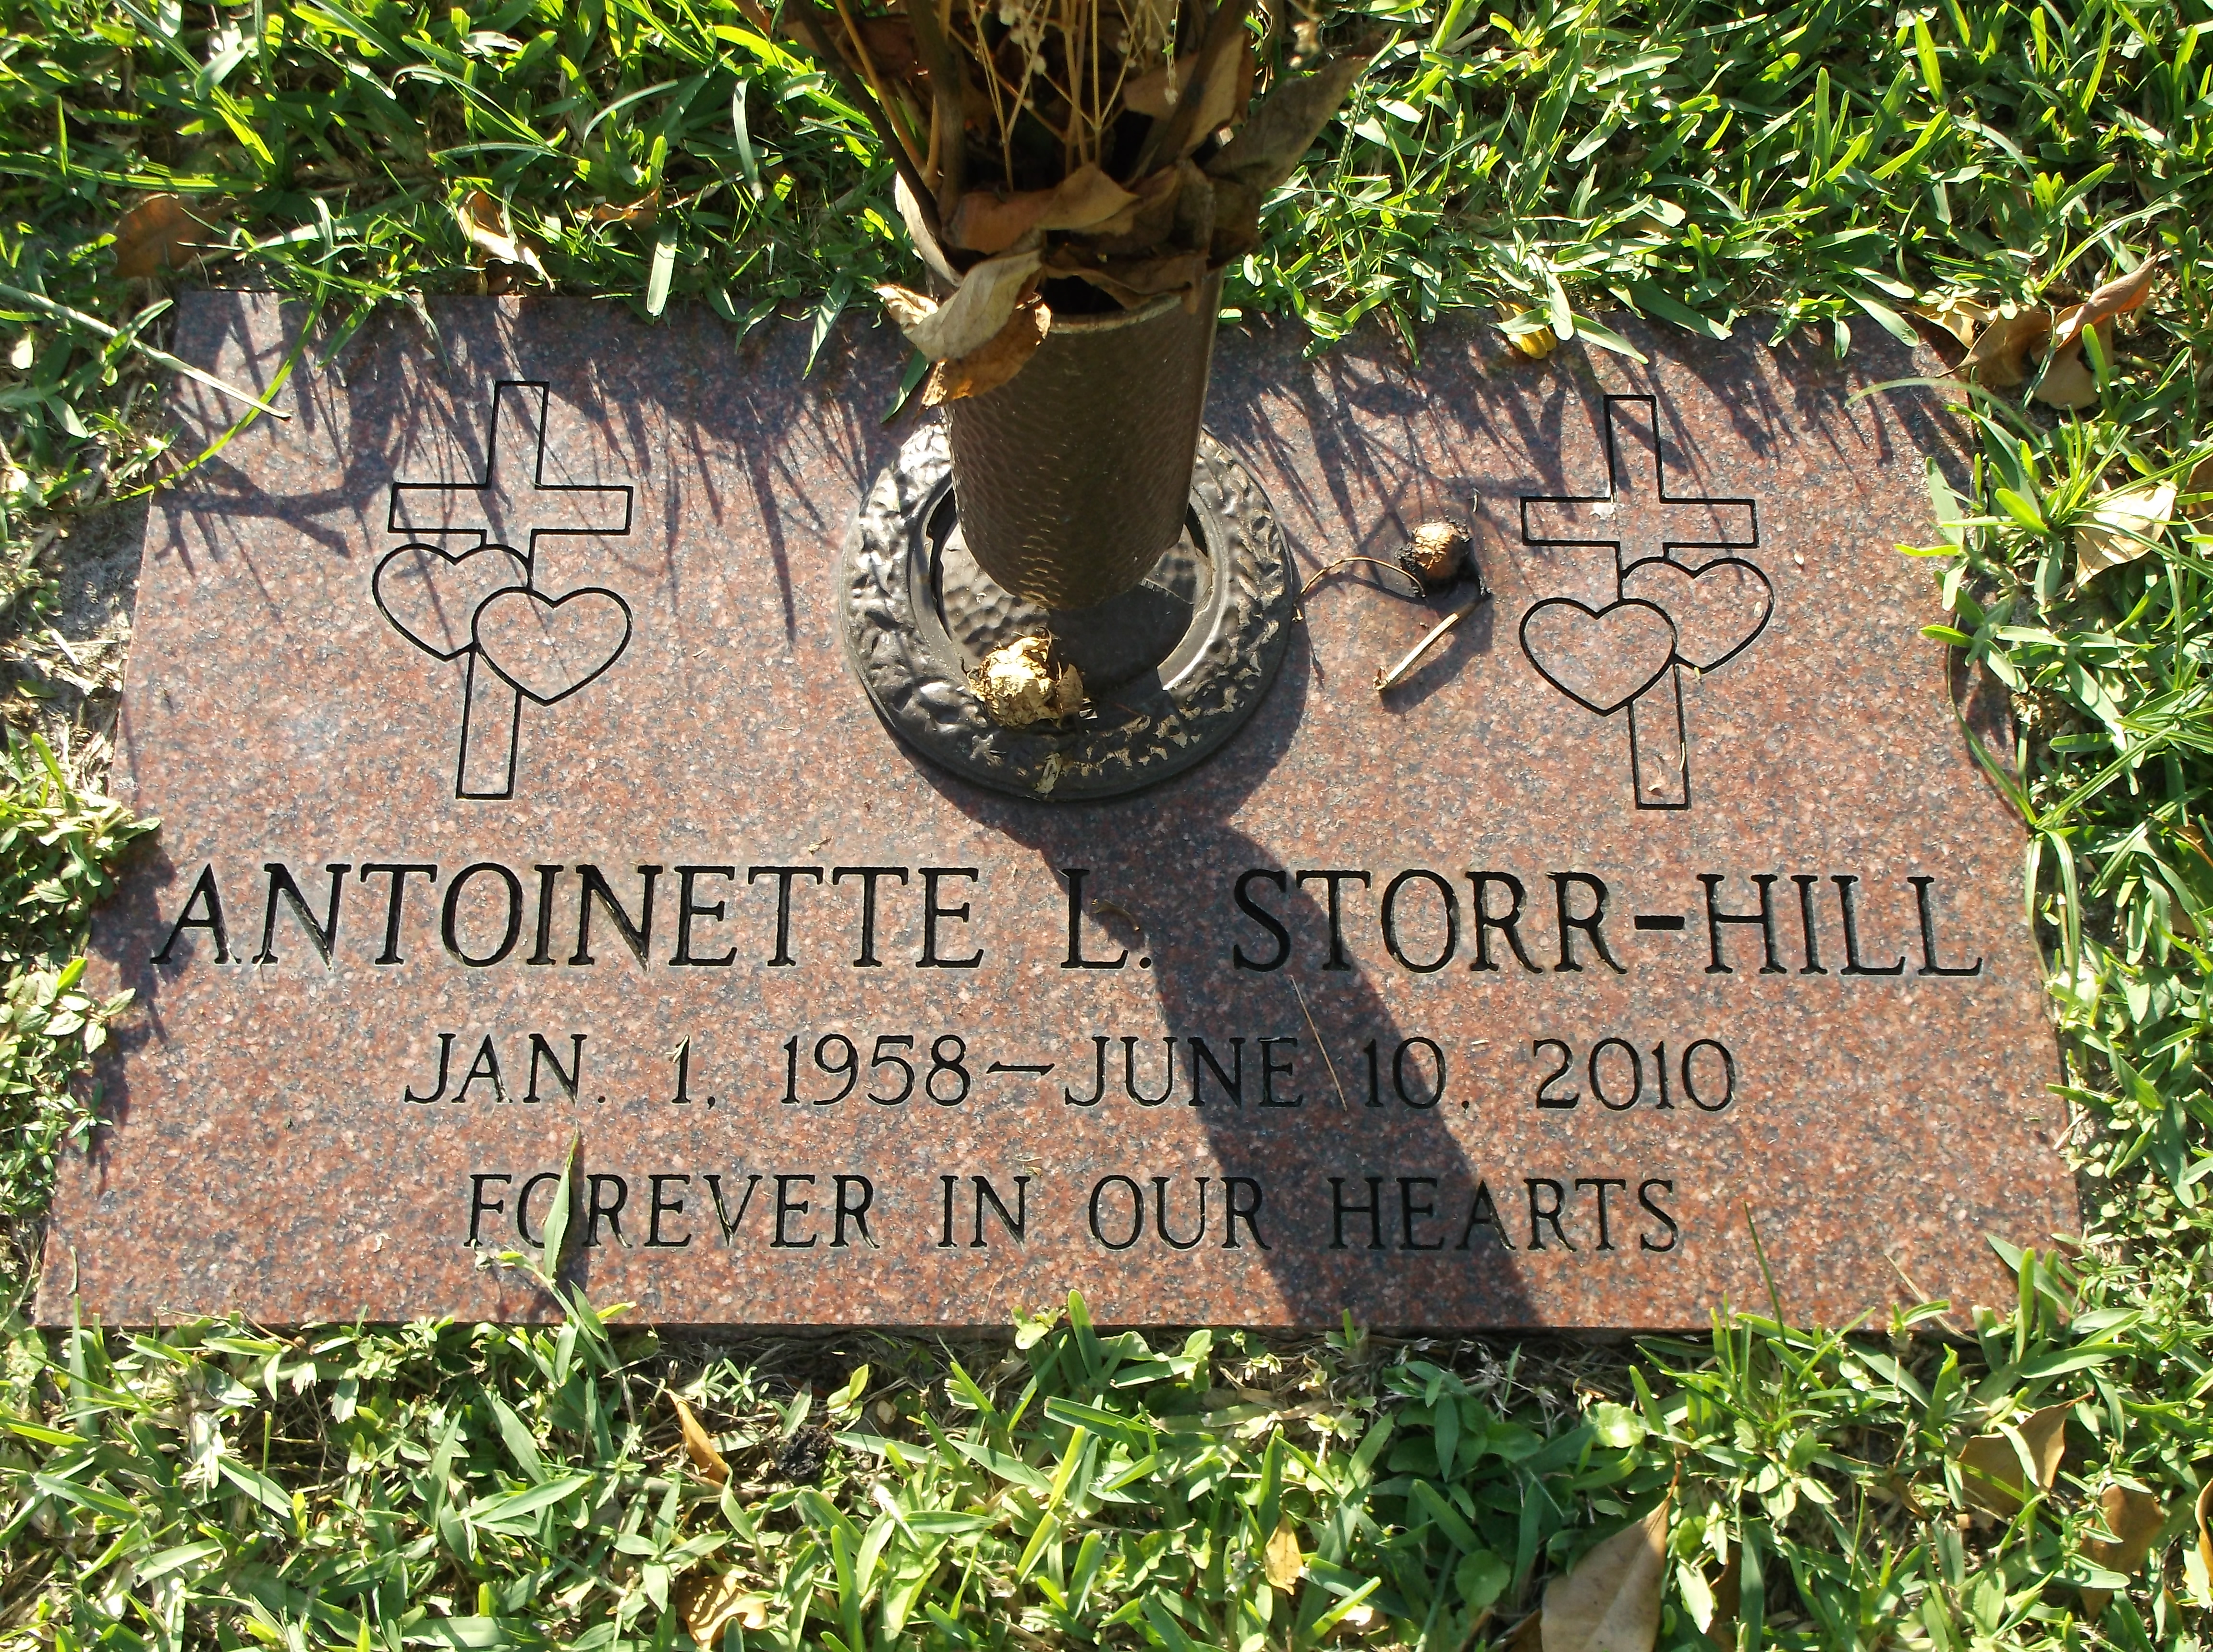 Antoinette L Storr Hill